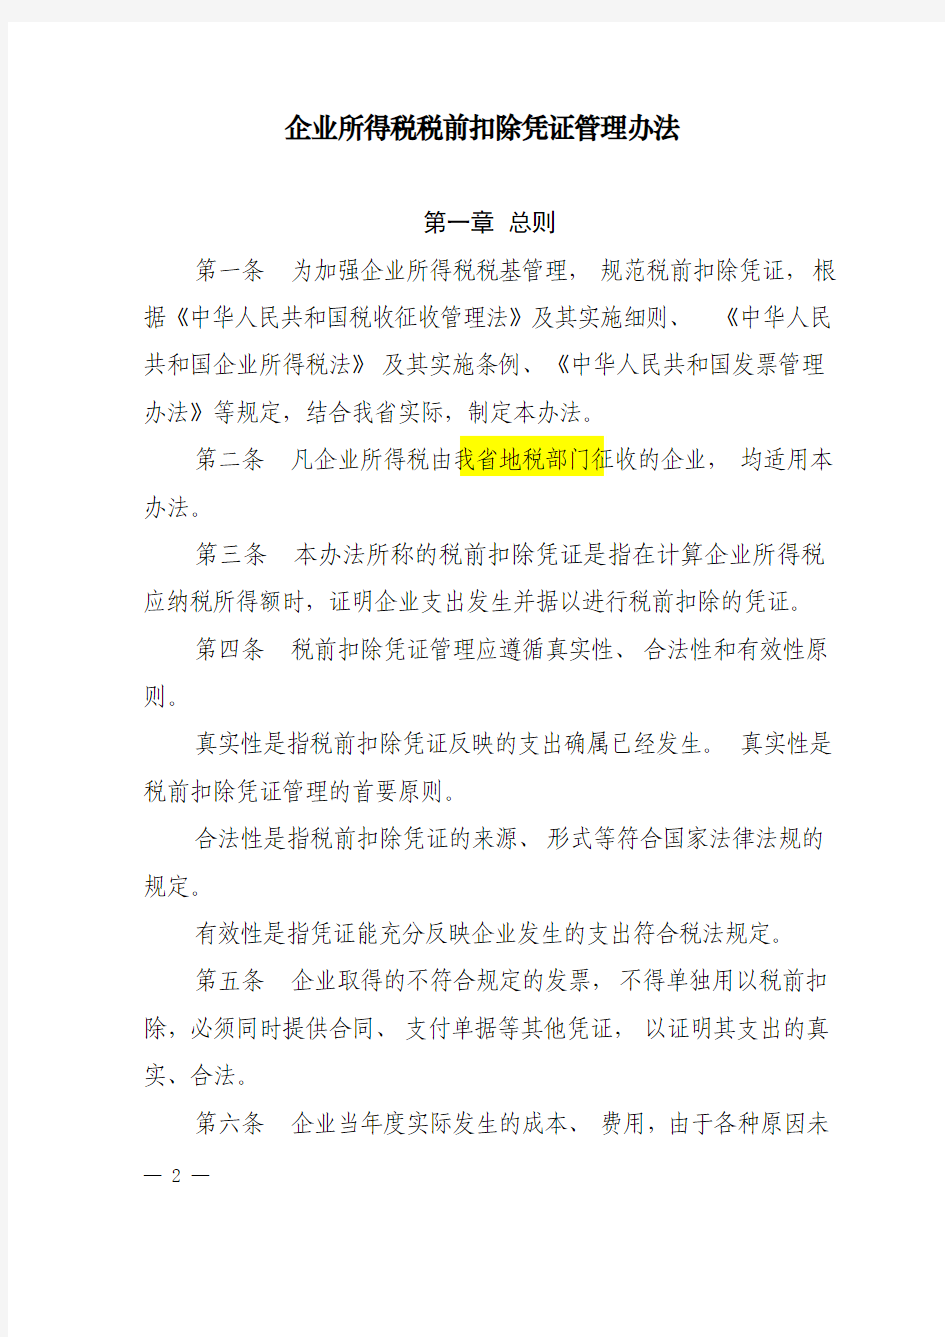 苏地税规[2011]13号---江苏省地方税务局关于发布《企业所得税税前扣除凭证管理办法》的公告